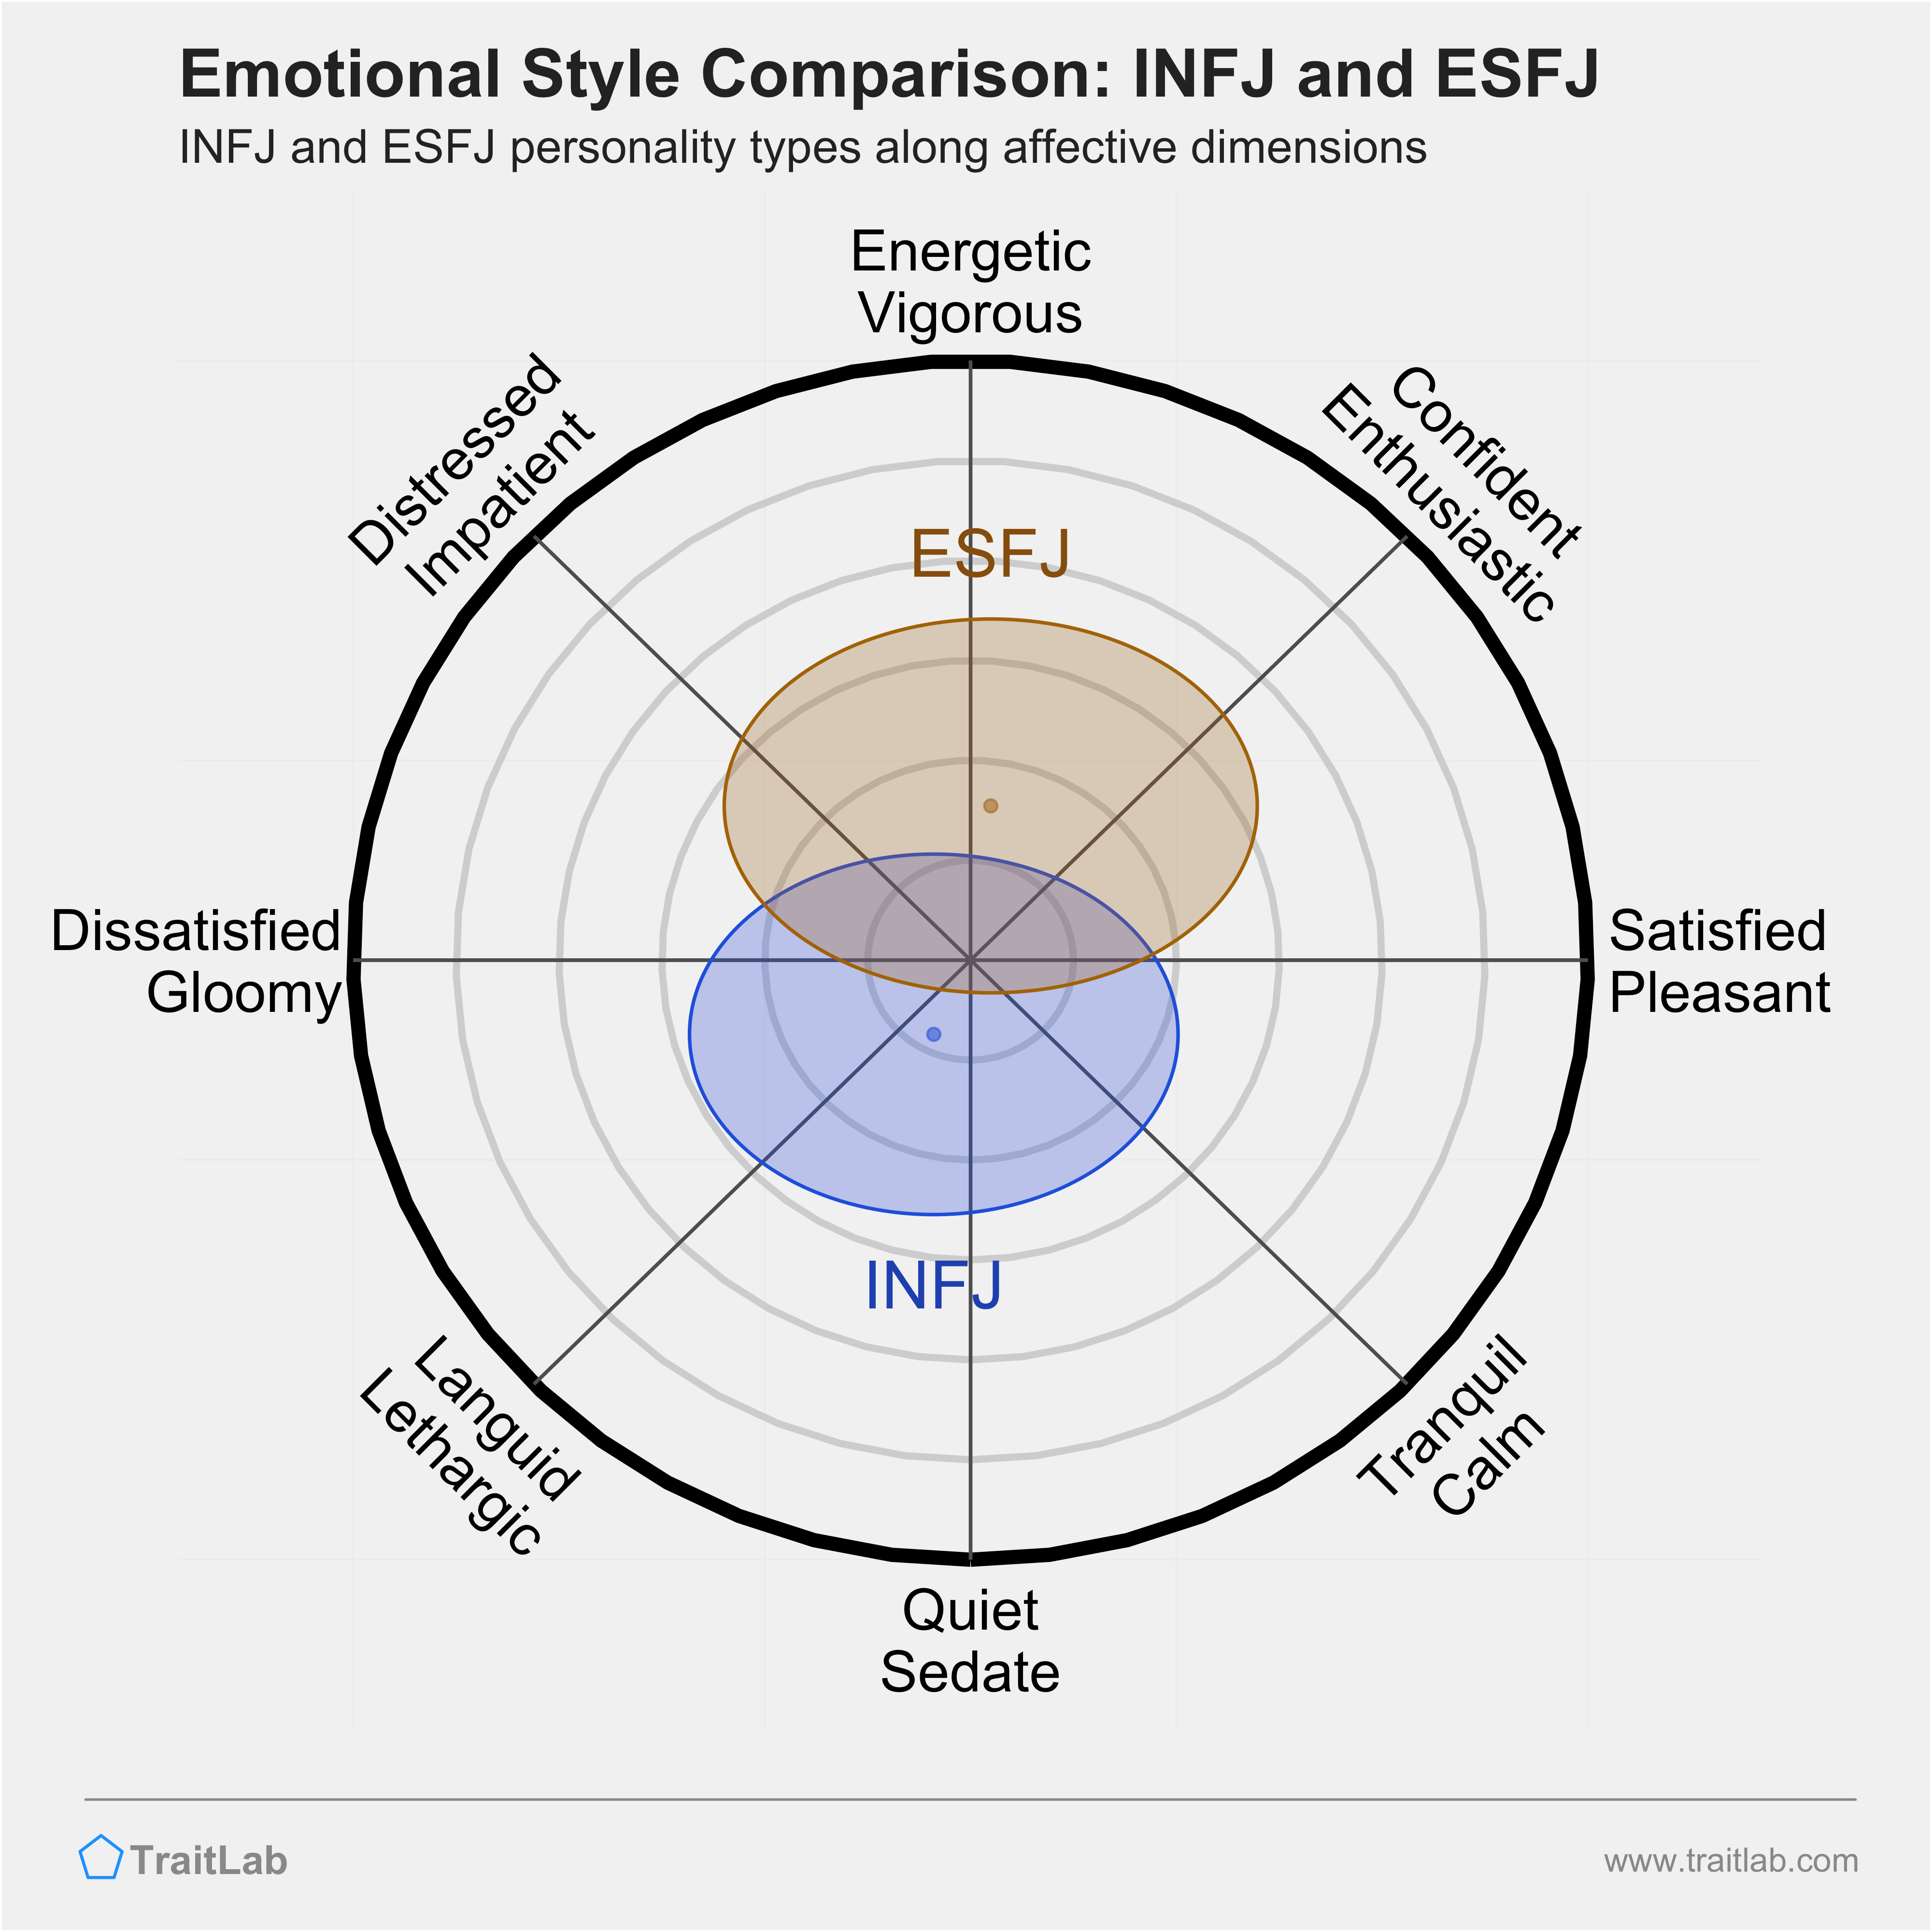 INFJ and ESFJ comparison across emotional (affective) dimensions